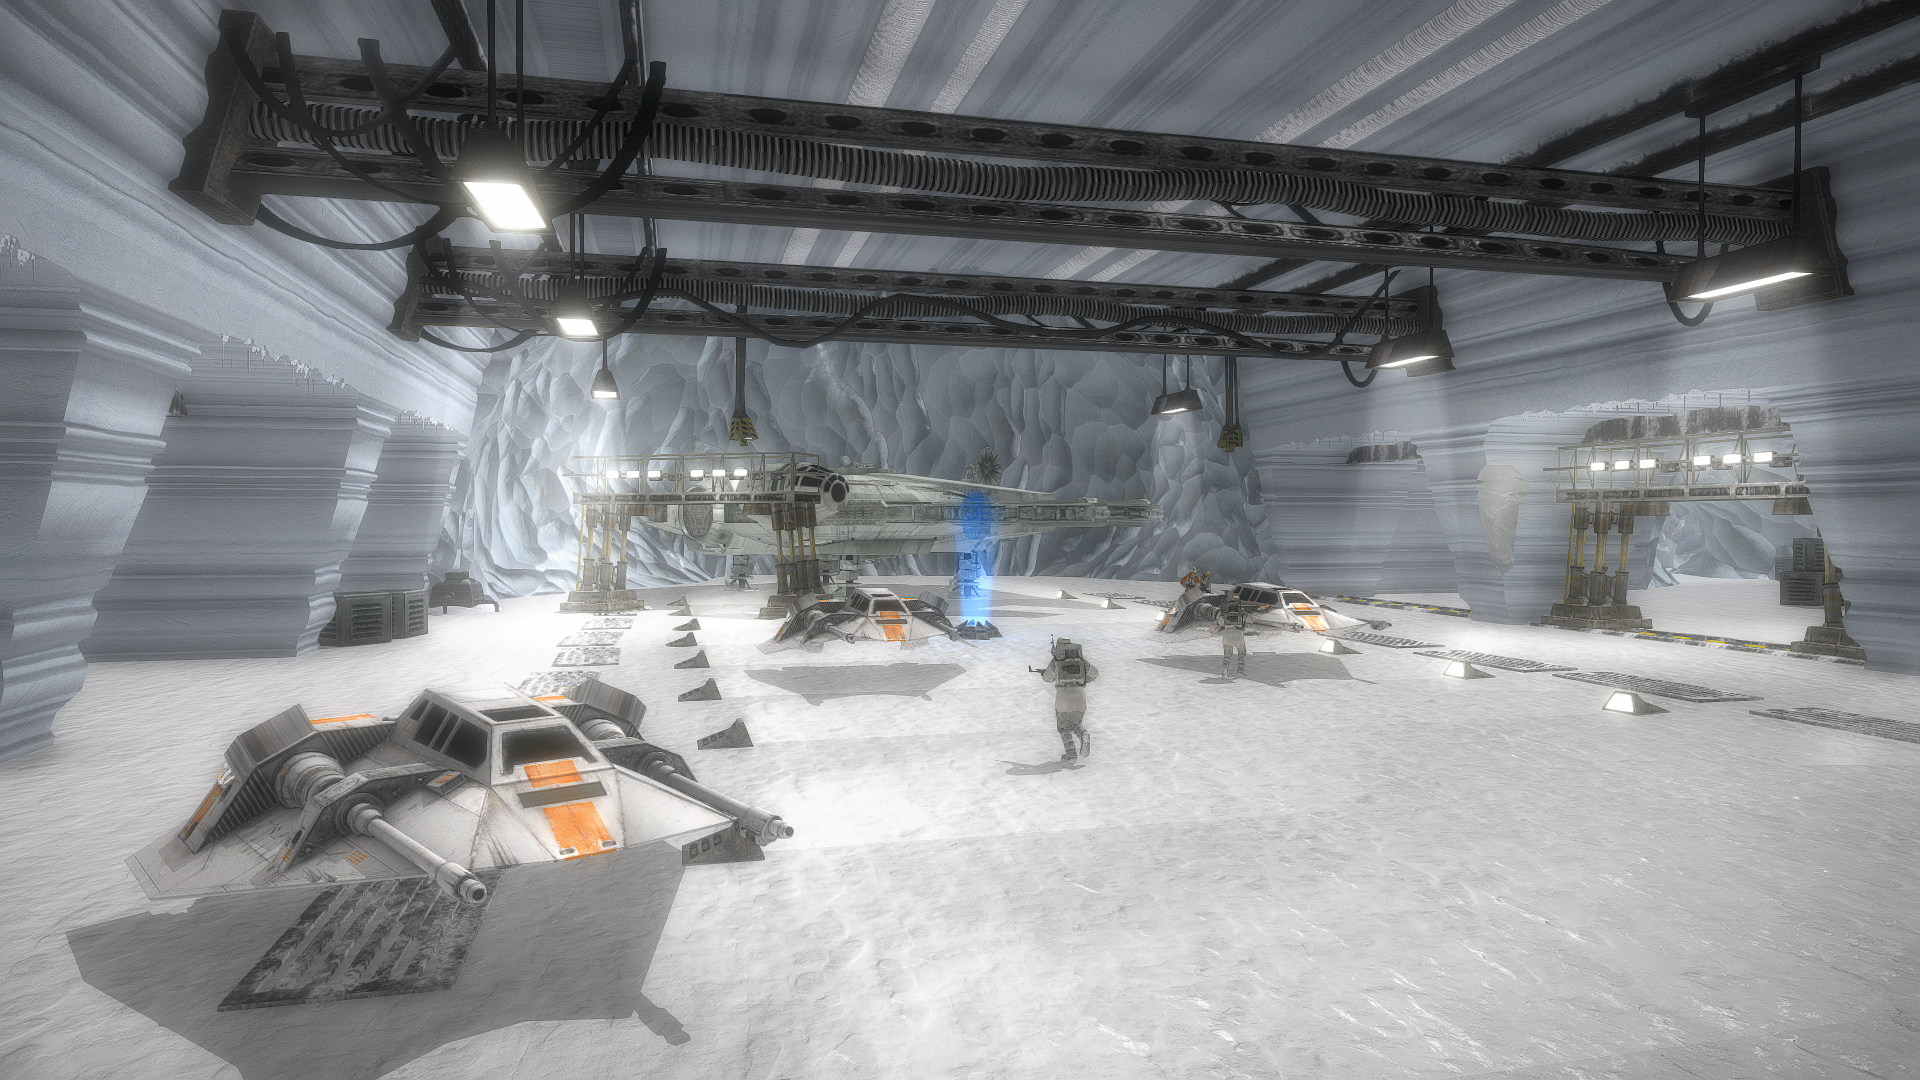 Echo Base Remake image - STAR WARS Battlefront 2 Remaster mod for